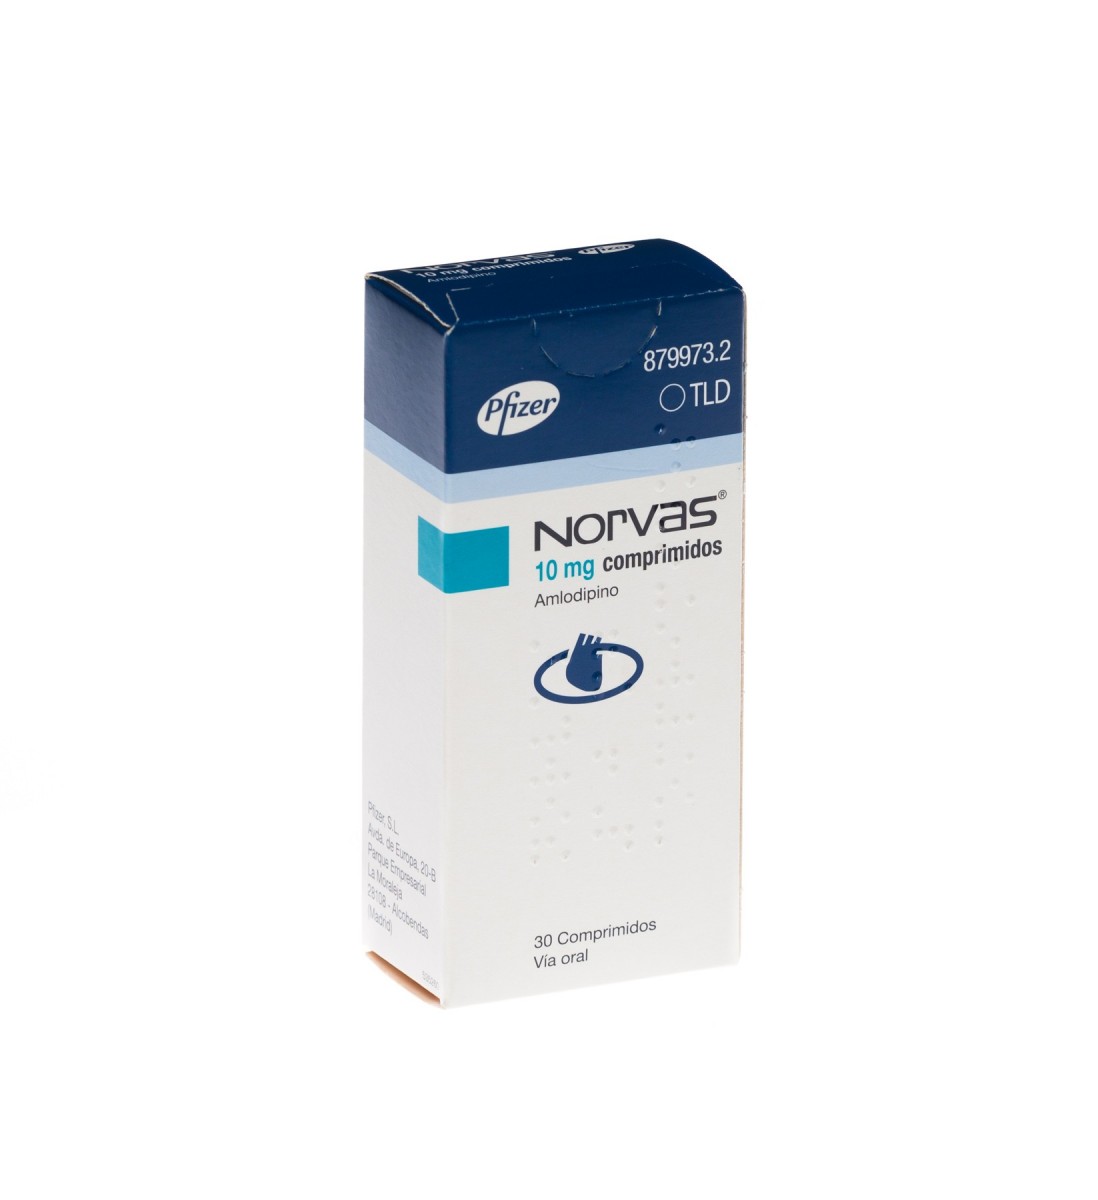 NORVAS 10 mg COMPRIMIDOS, 30 comprimidos fotografía del envase.